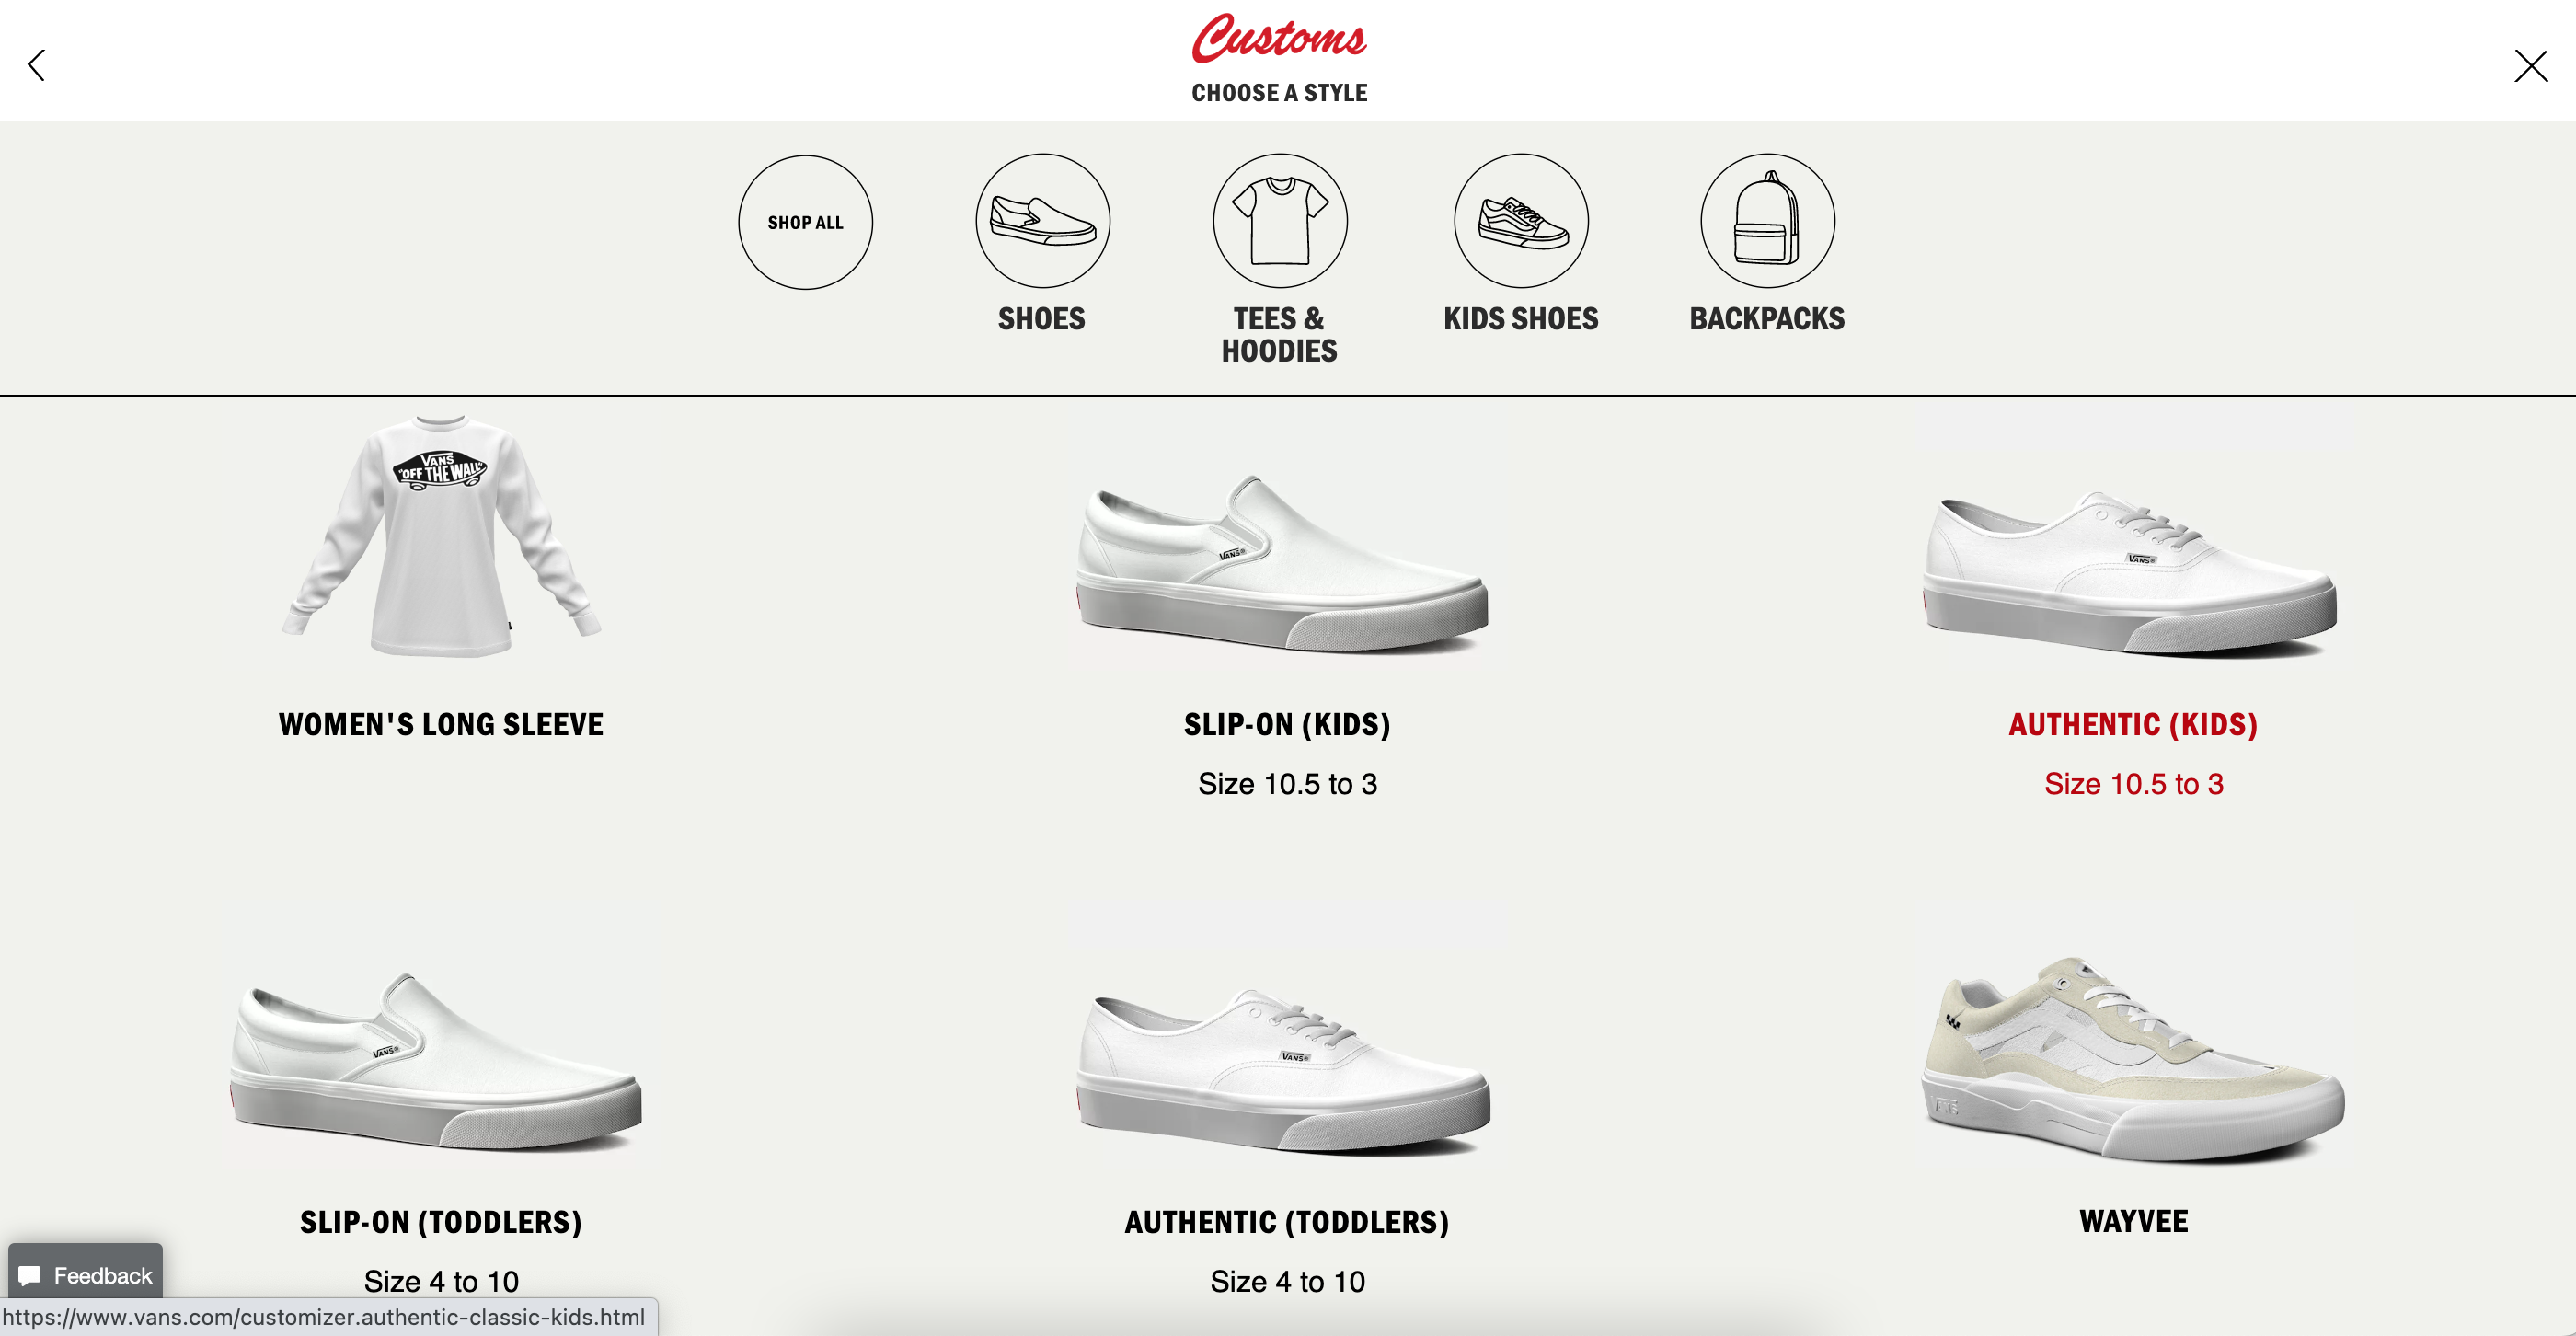 Opciones para diferentes estilos de zapatillas y ropa que puedes personalizar en Vans.com